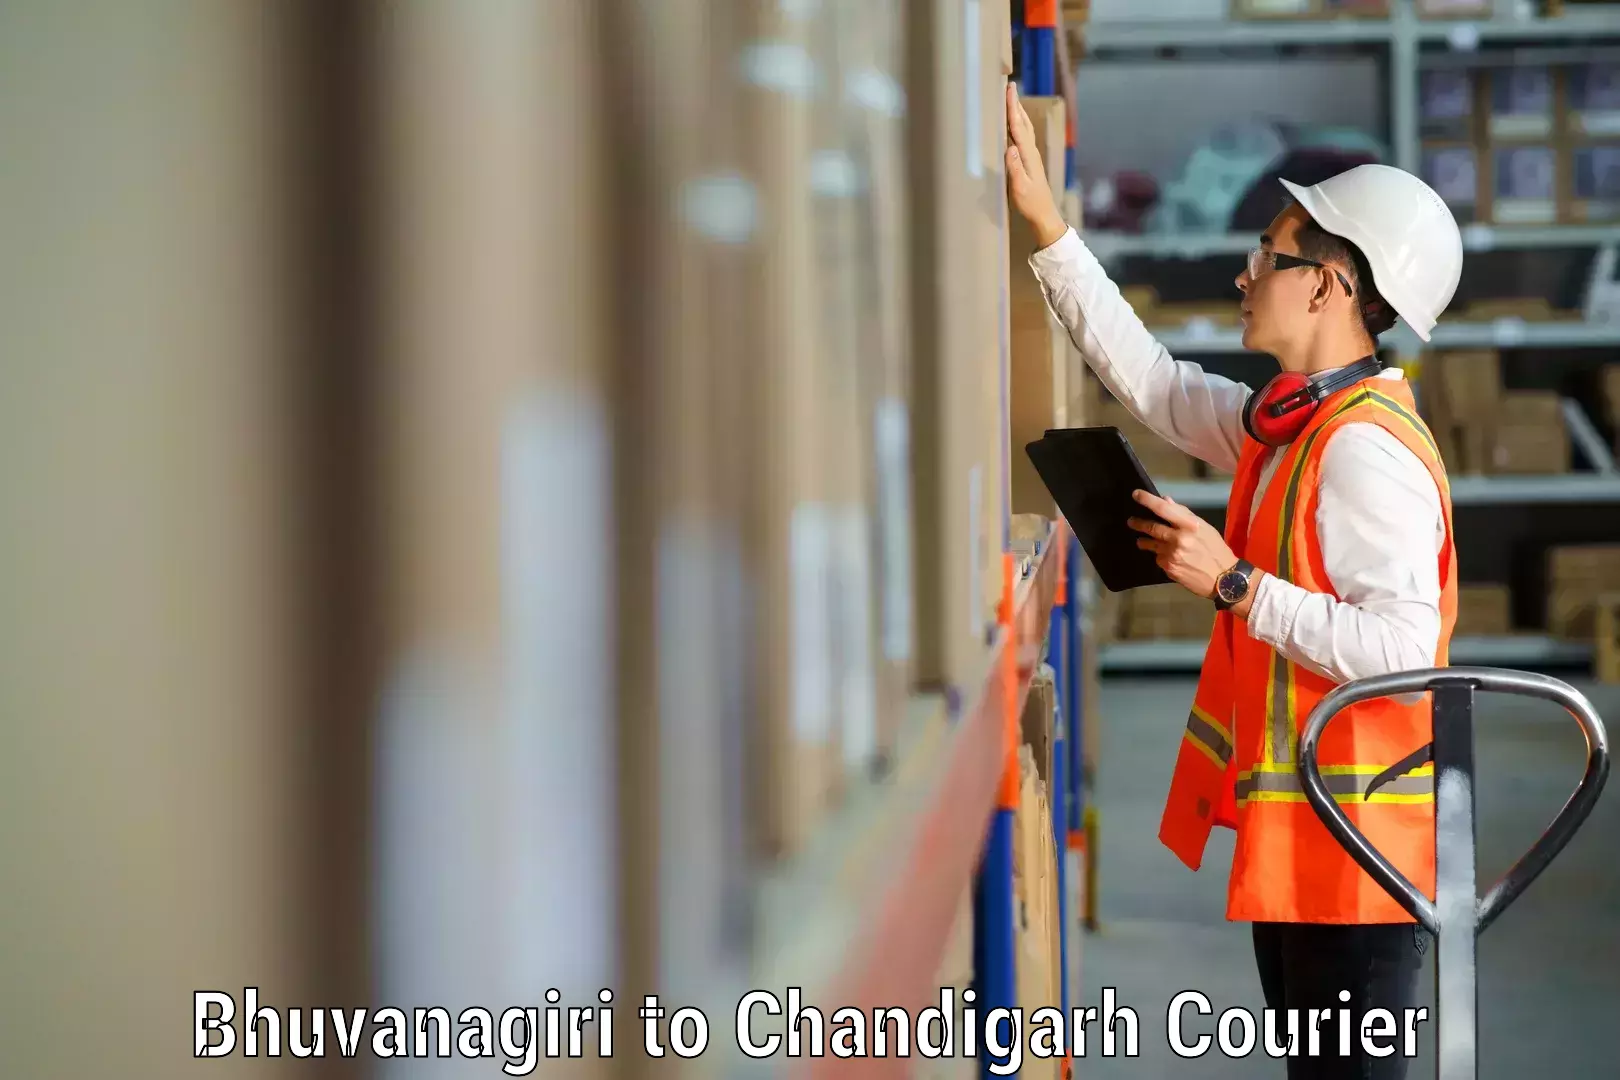 Skilled furniture transporters Bhuvanagiri to Chandigarh